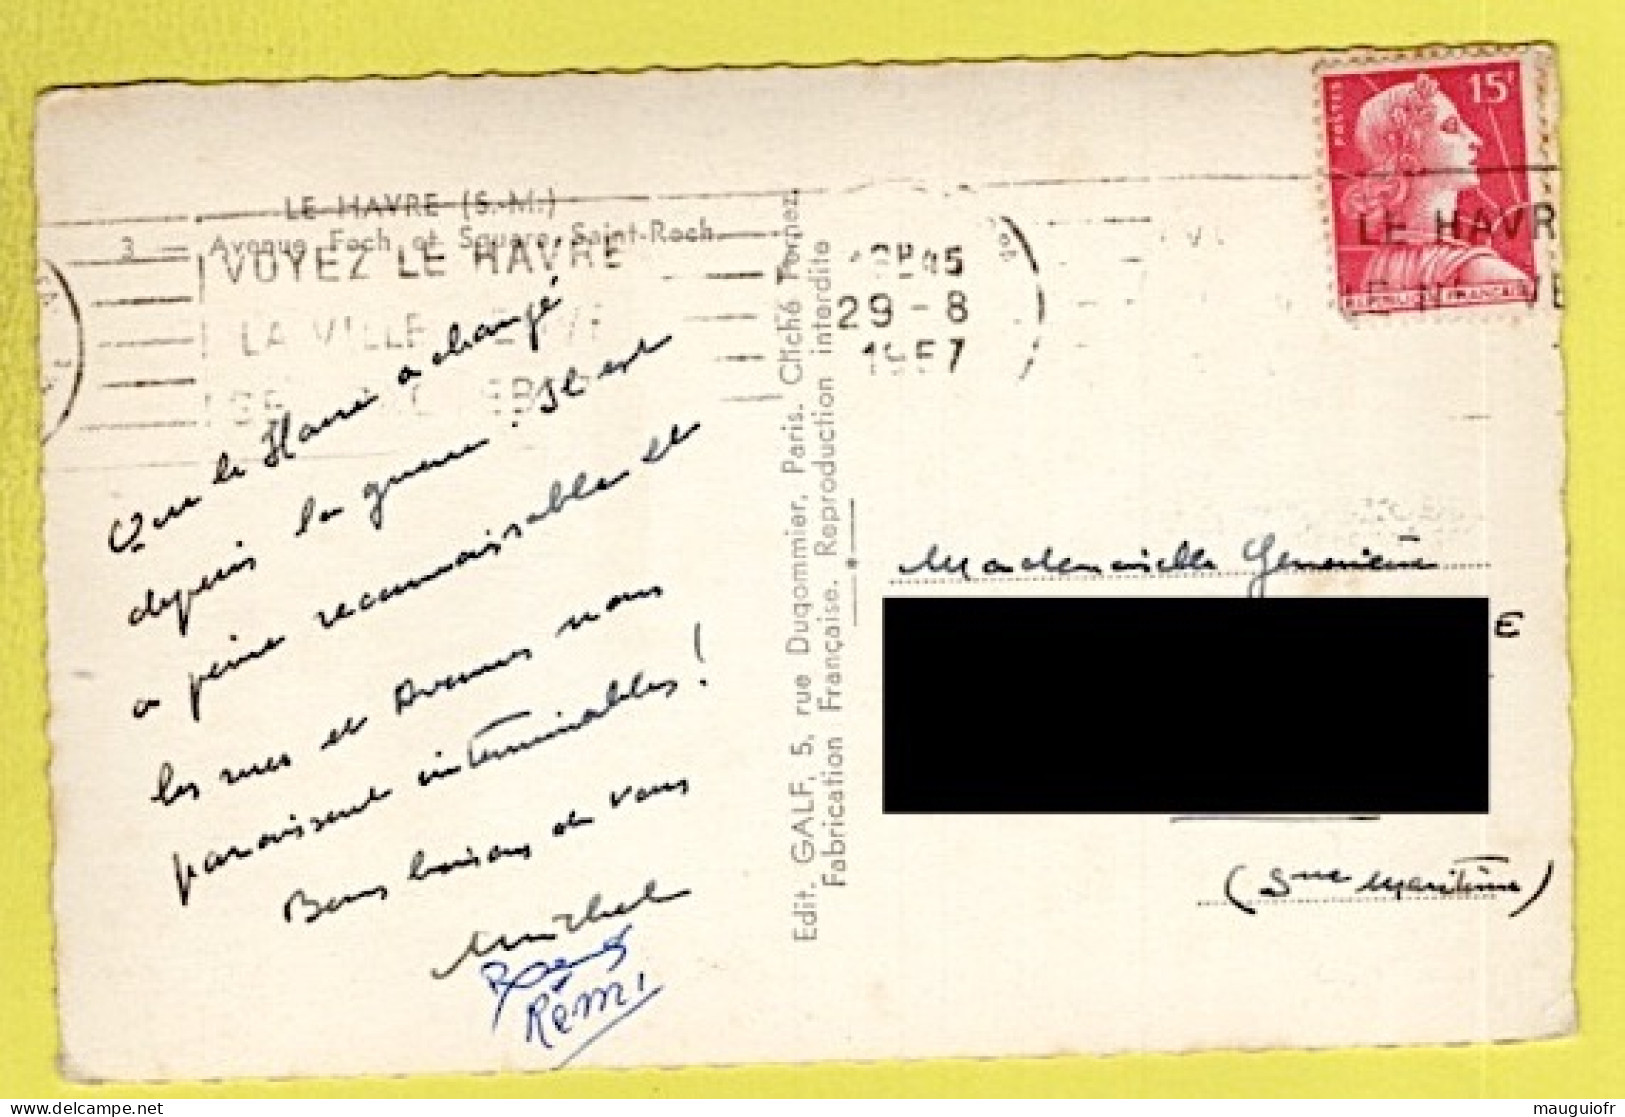 76 SEINE MARITIME / LE HAVRE / L'AVENUE FOCH ET LE SQUARE SAINT-ROCH / 1957 - Saint-Roch (Plein)